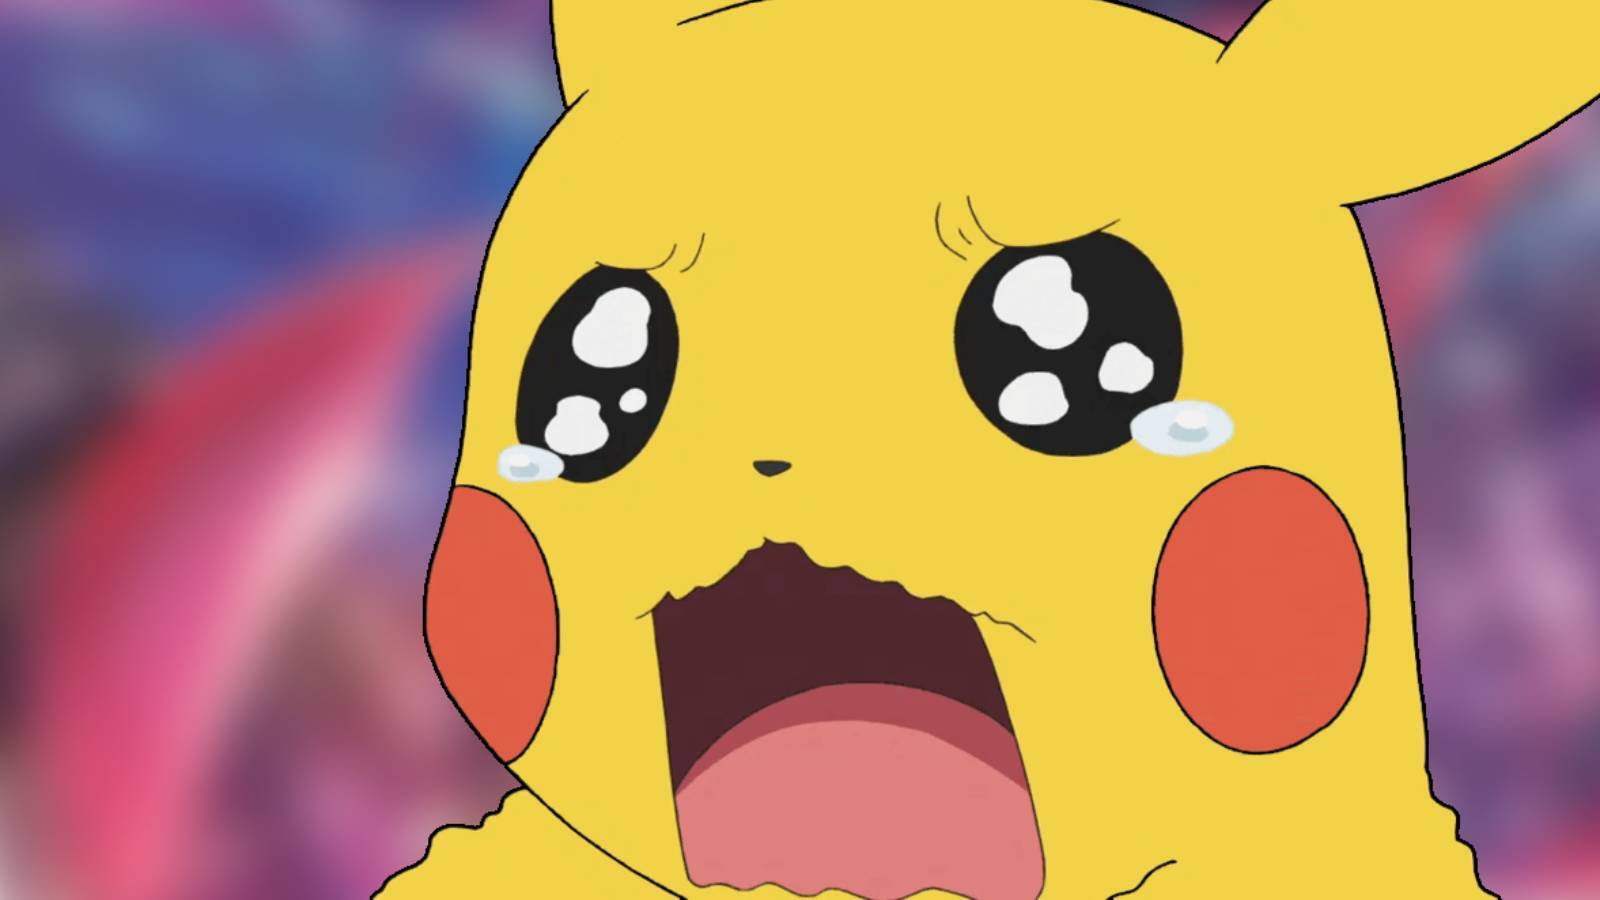 Pikachu in tears